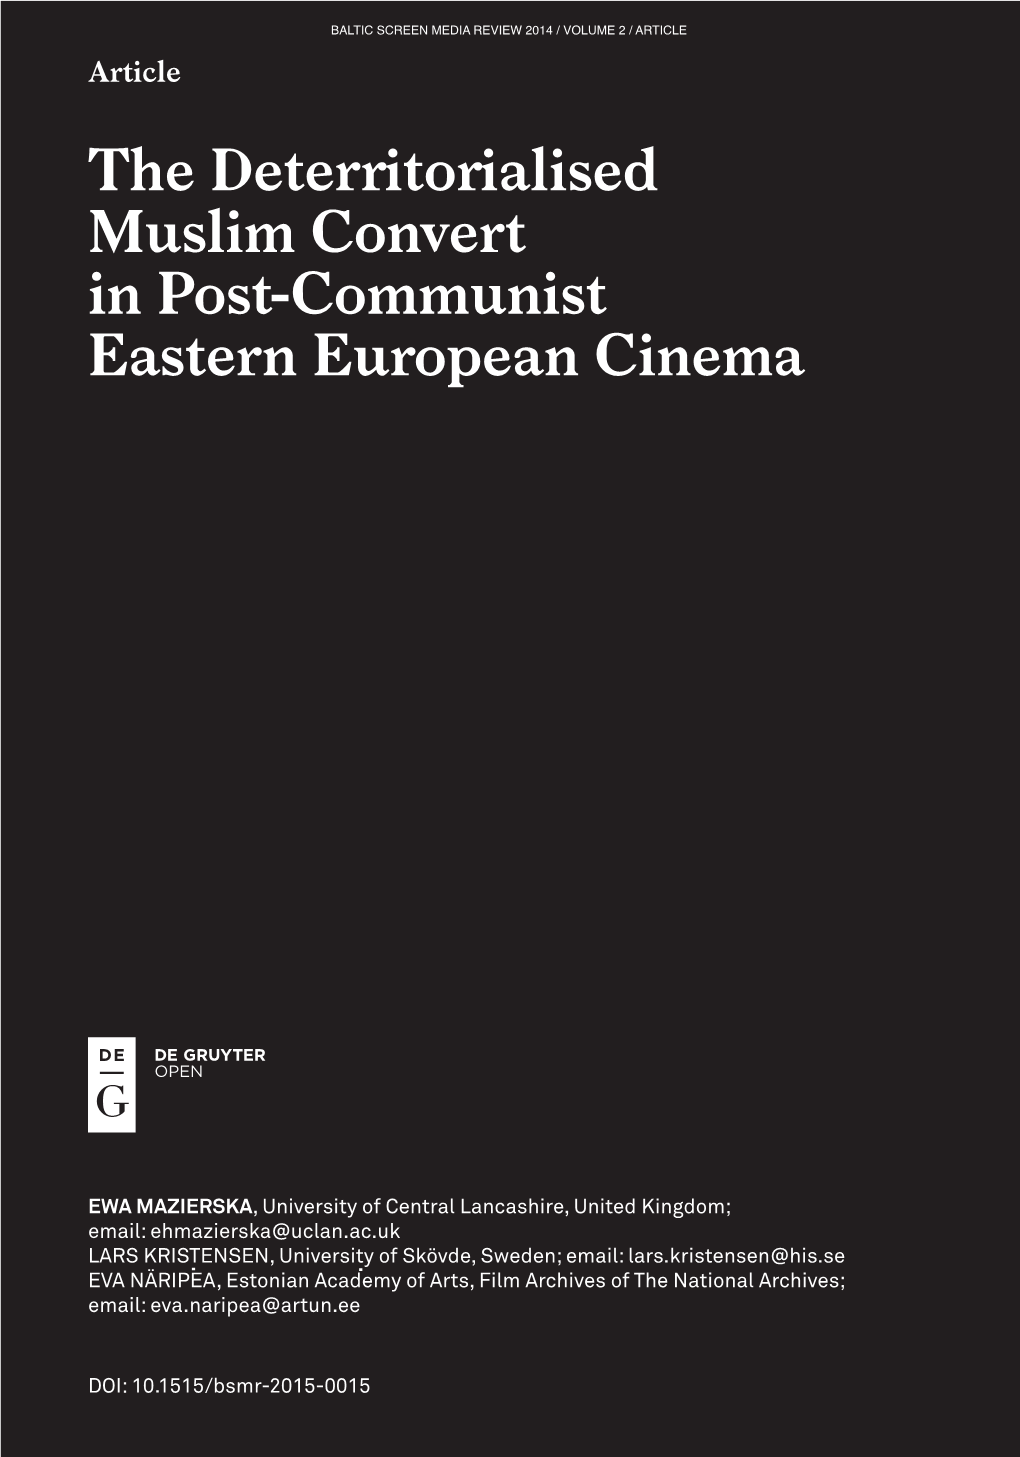 The Deterritorialised Muslim Convert in Post-Communist Eastern European Cinema